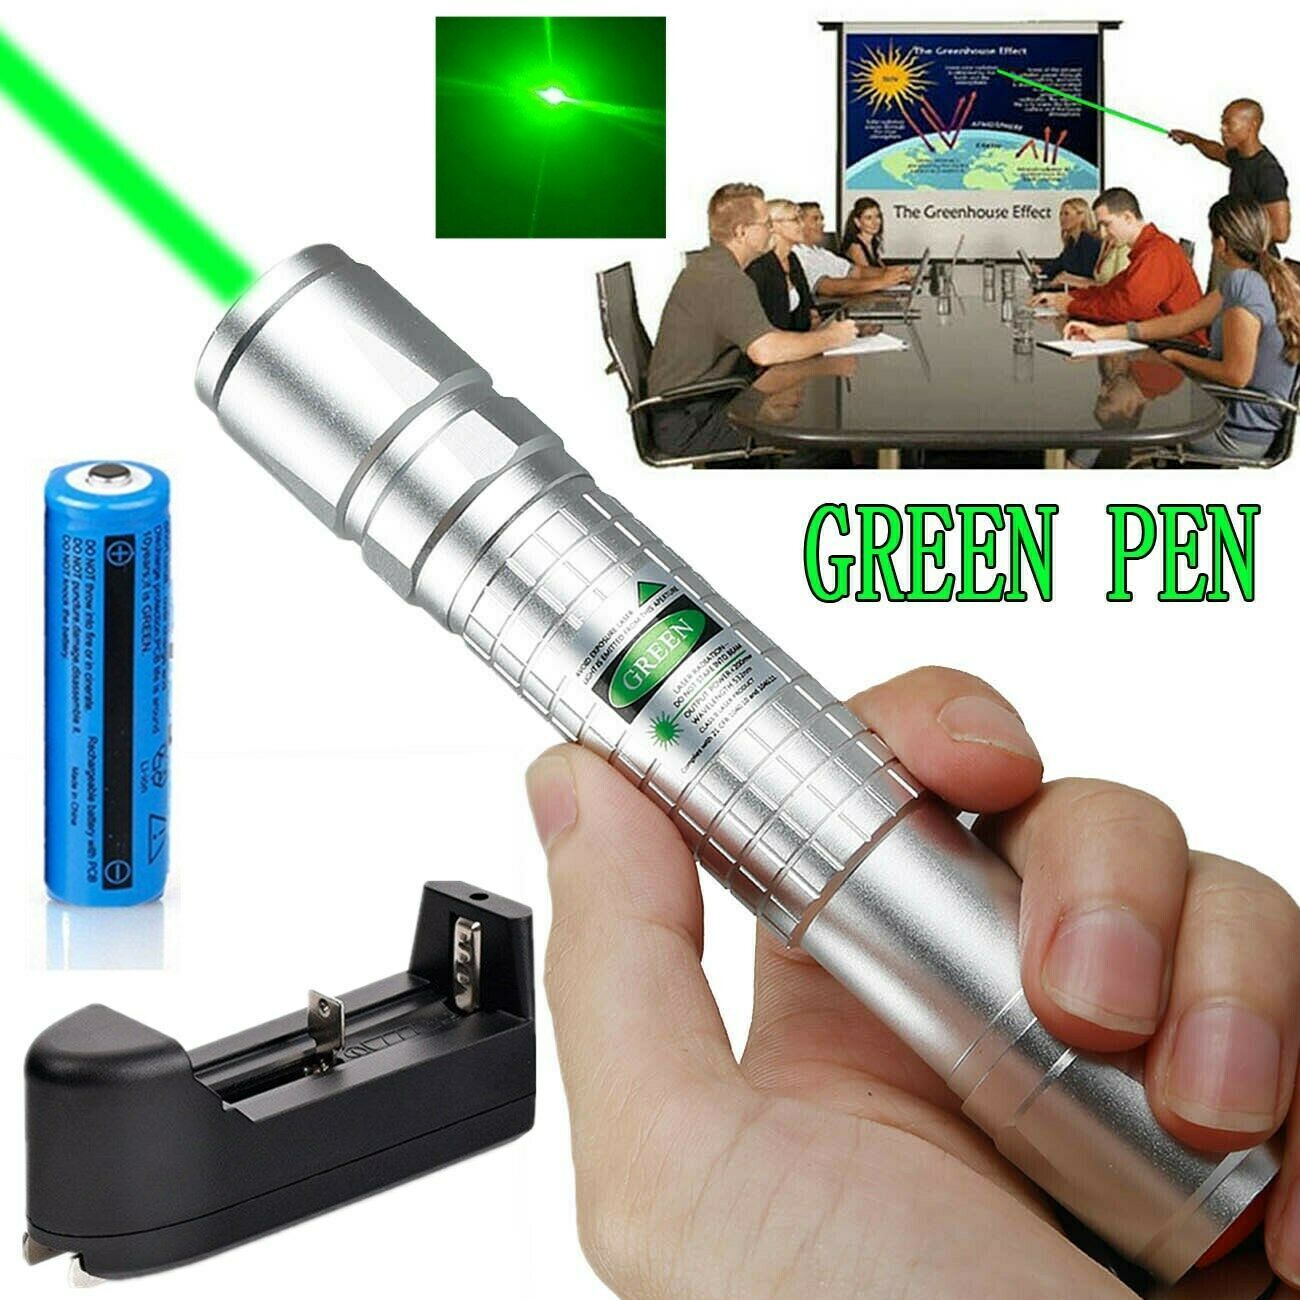 실버 강력한 10Mile 녹색 레이저 포인터 펜 5MW 532nm에서 군사 레이저 펜 포인터 천문학 빔 라이트 애완 동물 장난감 + 18650 배터리 + 충전기